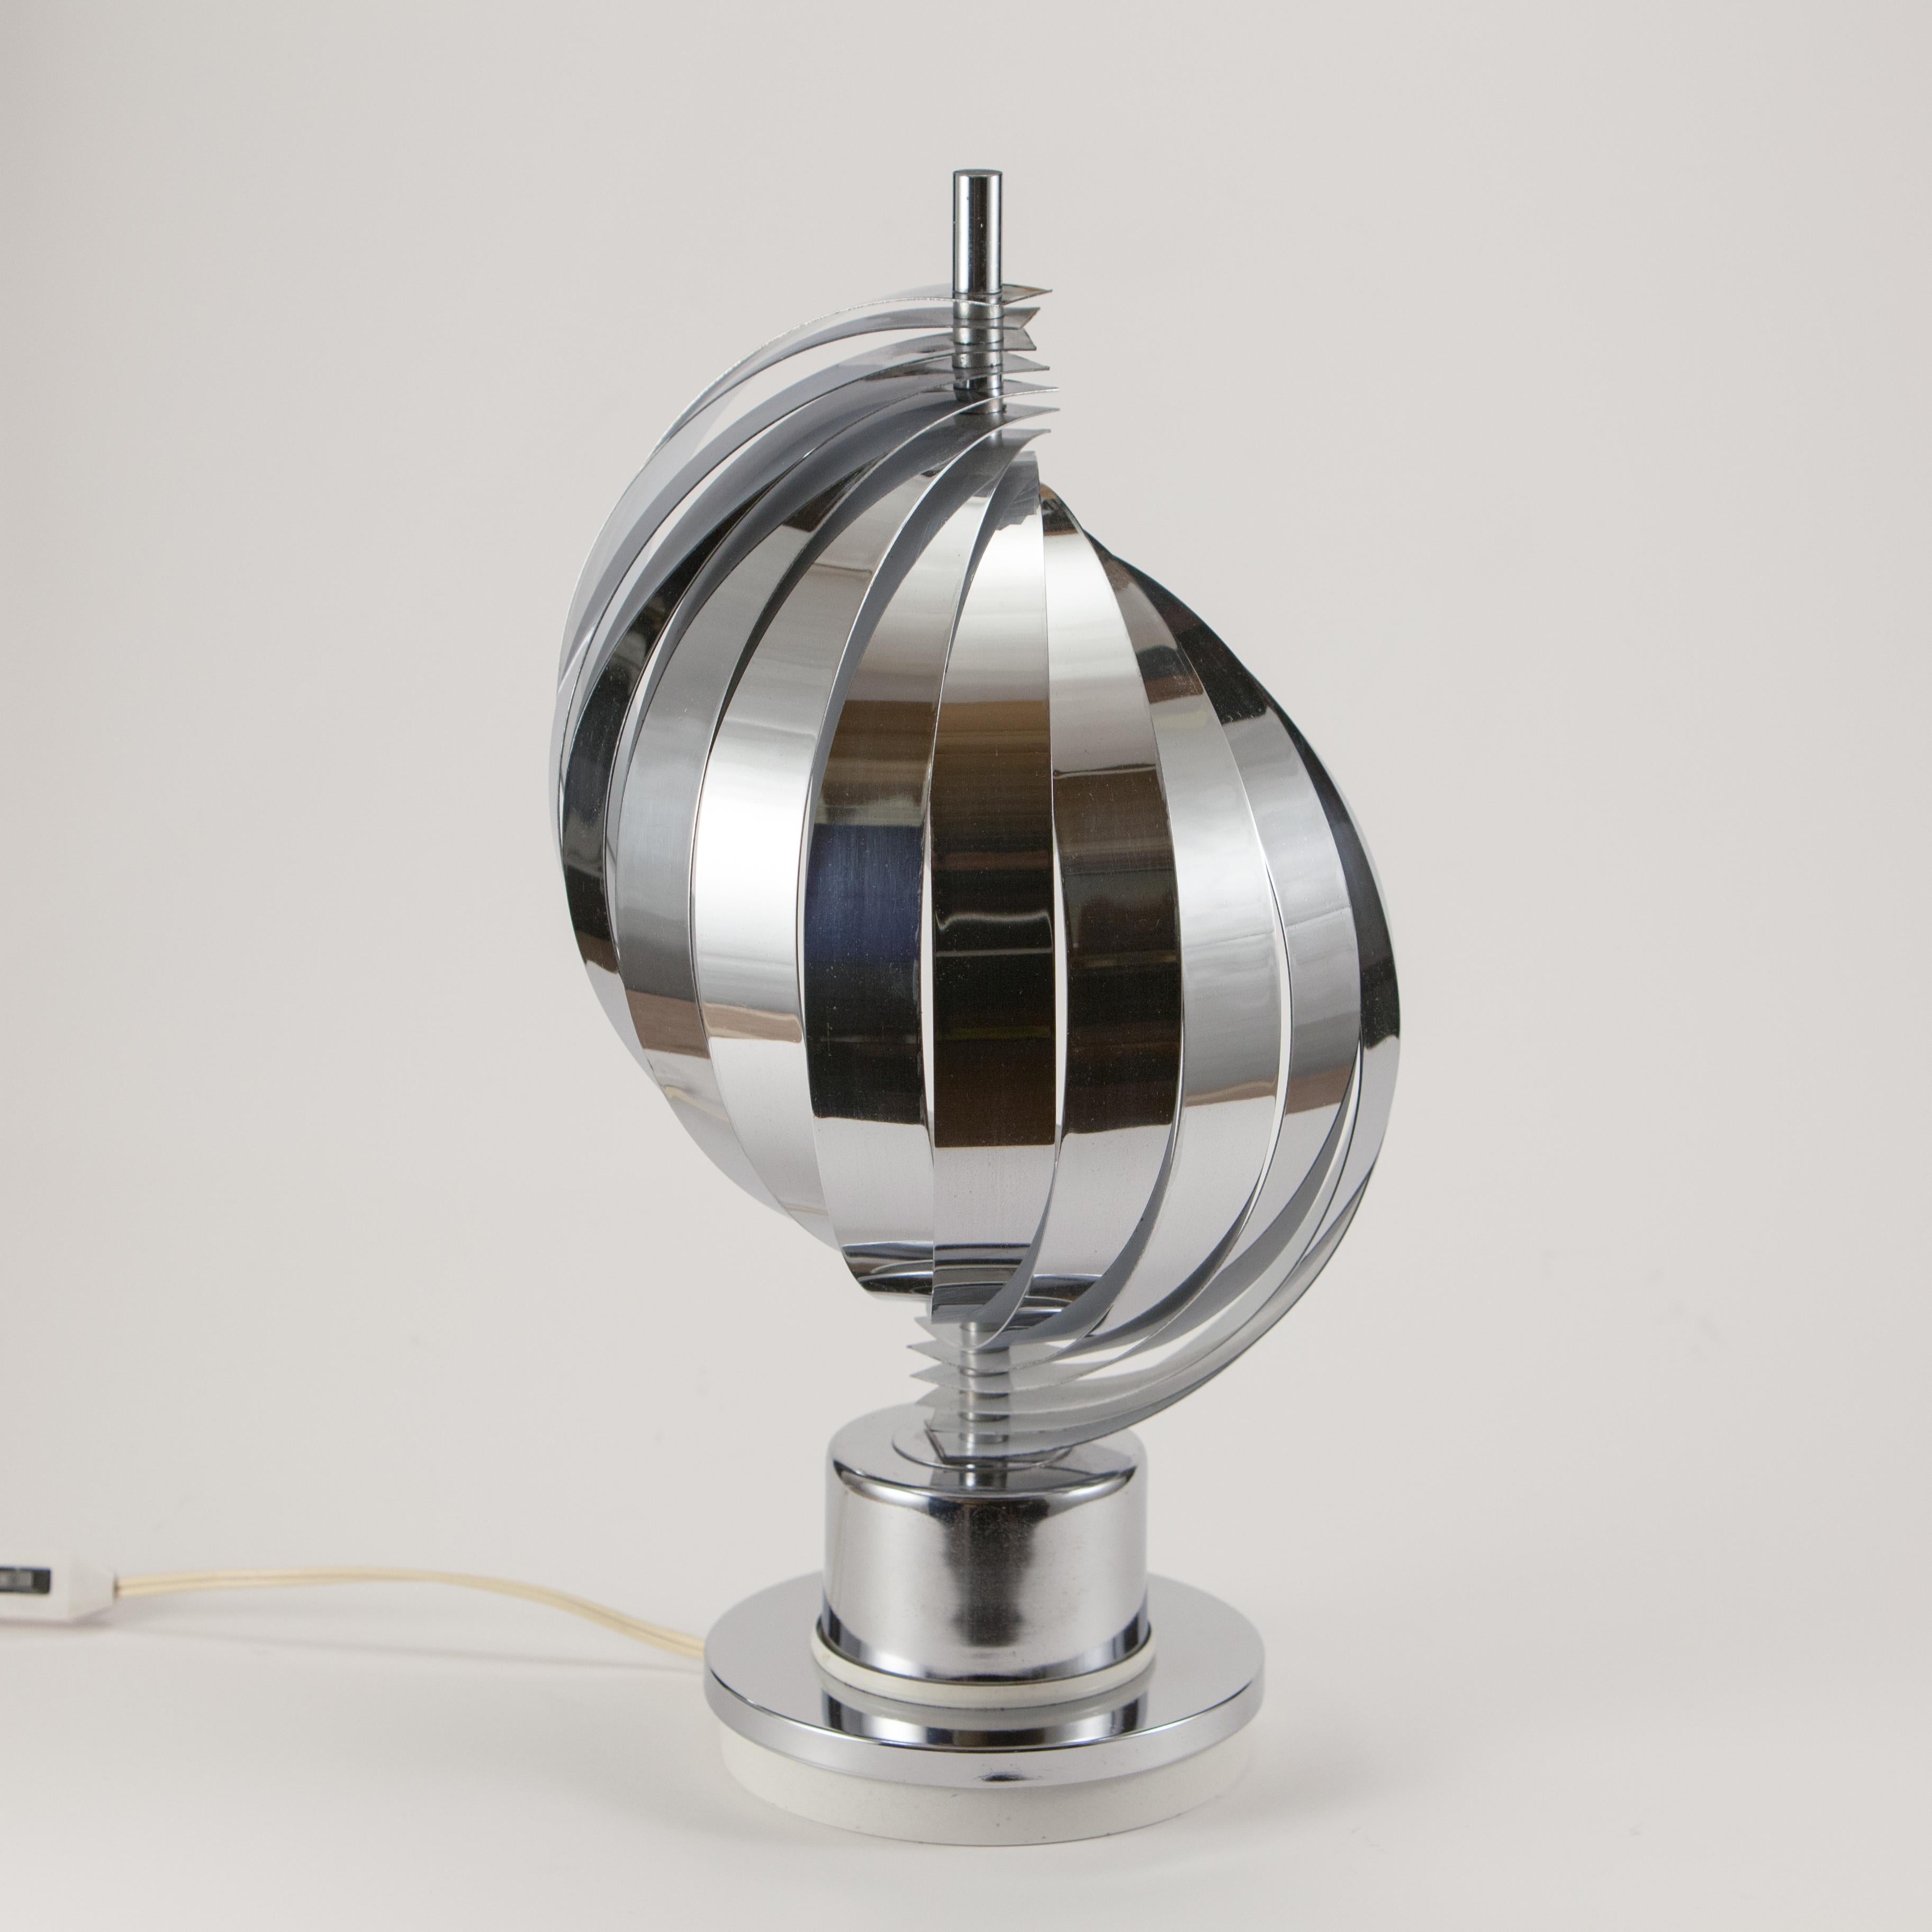 Tischlampe, hergestellt in den 70er Jahren. 
Die beweglichen Metallbänder laufen spiralförmig an einer zentralen Stange herunter. Die Lampe hat eine E14-Fassung.
Empfohlen wird eine 6,5-Watt-LED-Birne, die 40 Watt entspricht. Eine Glühbirne ist